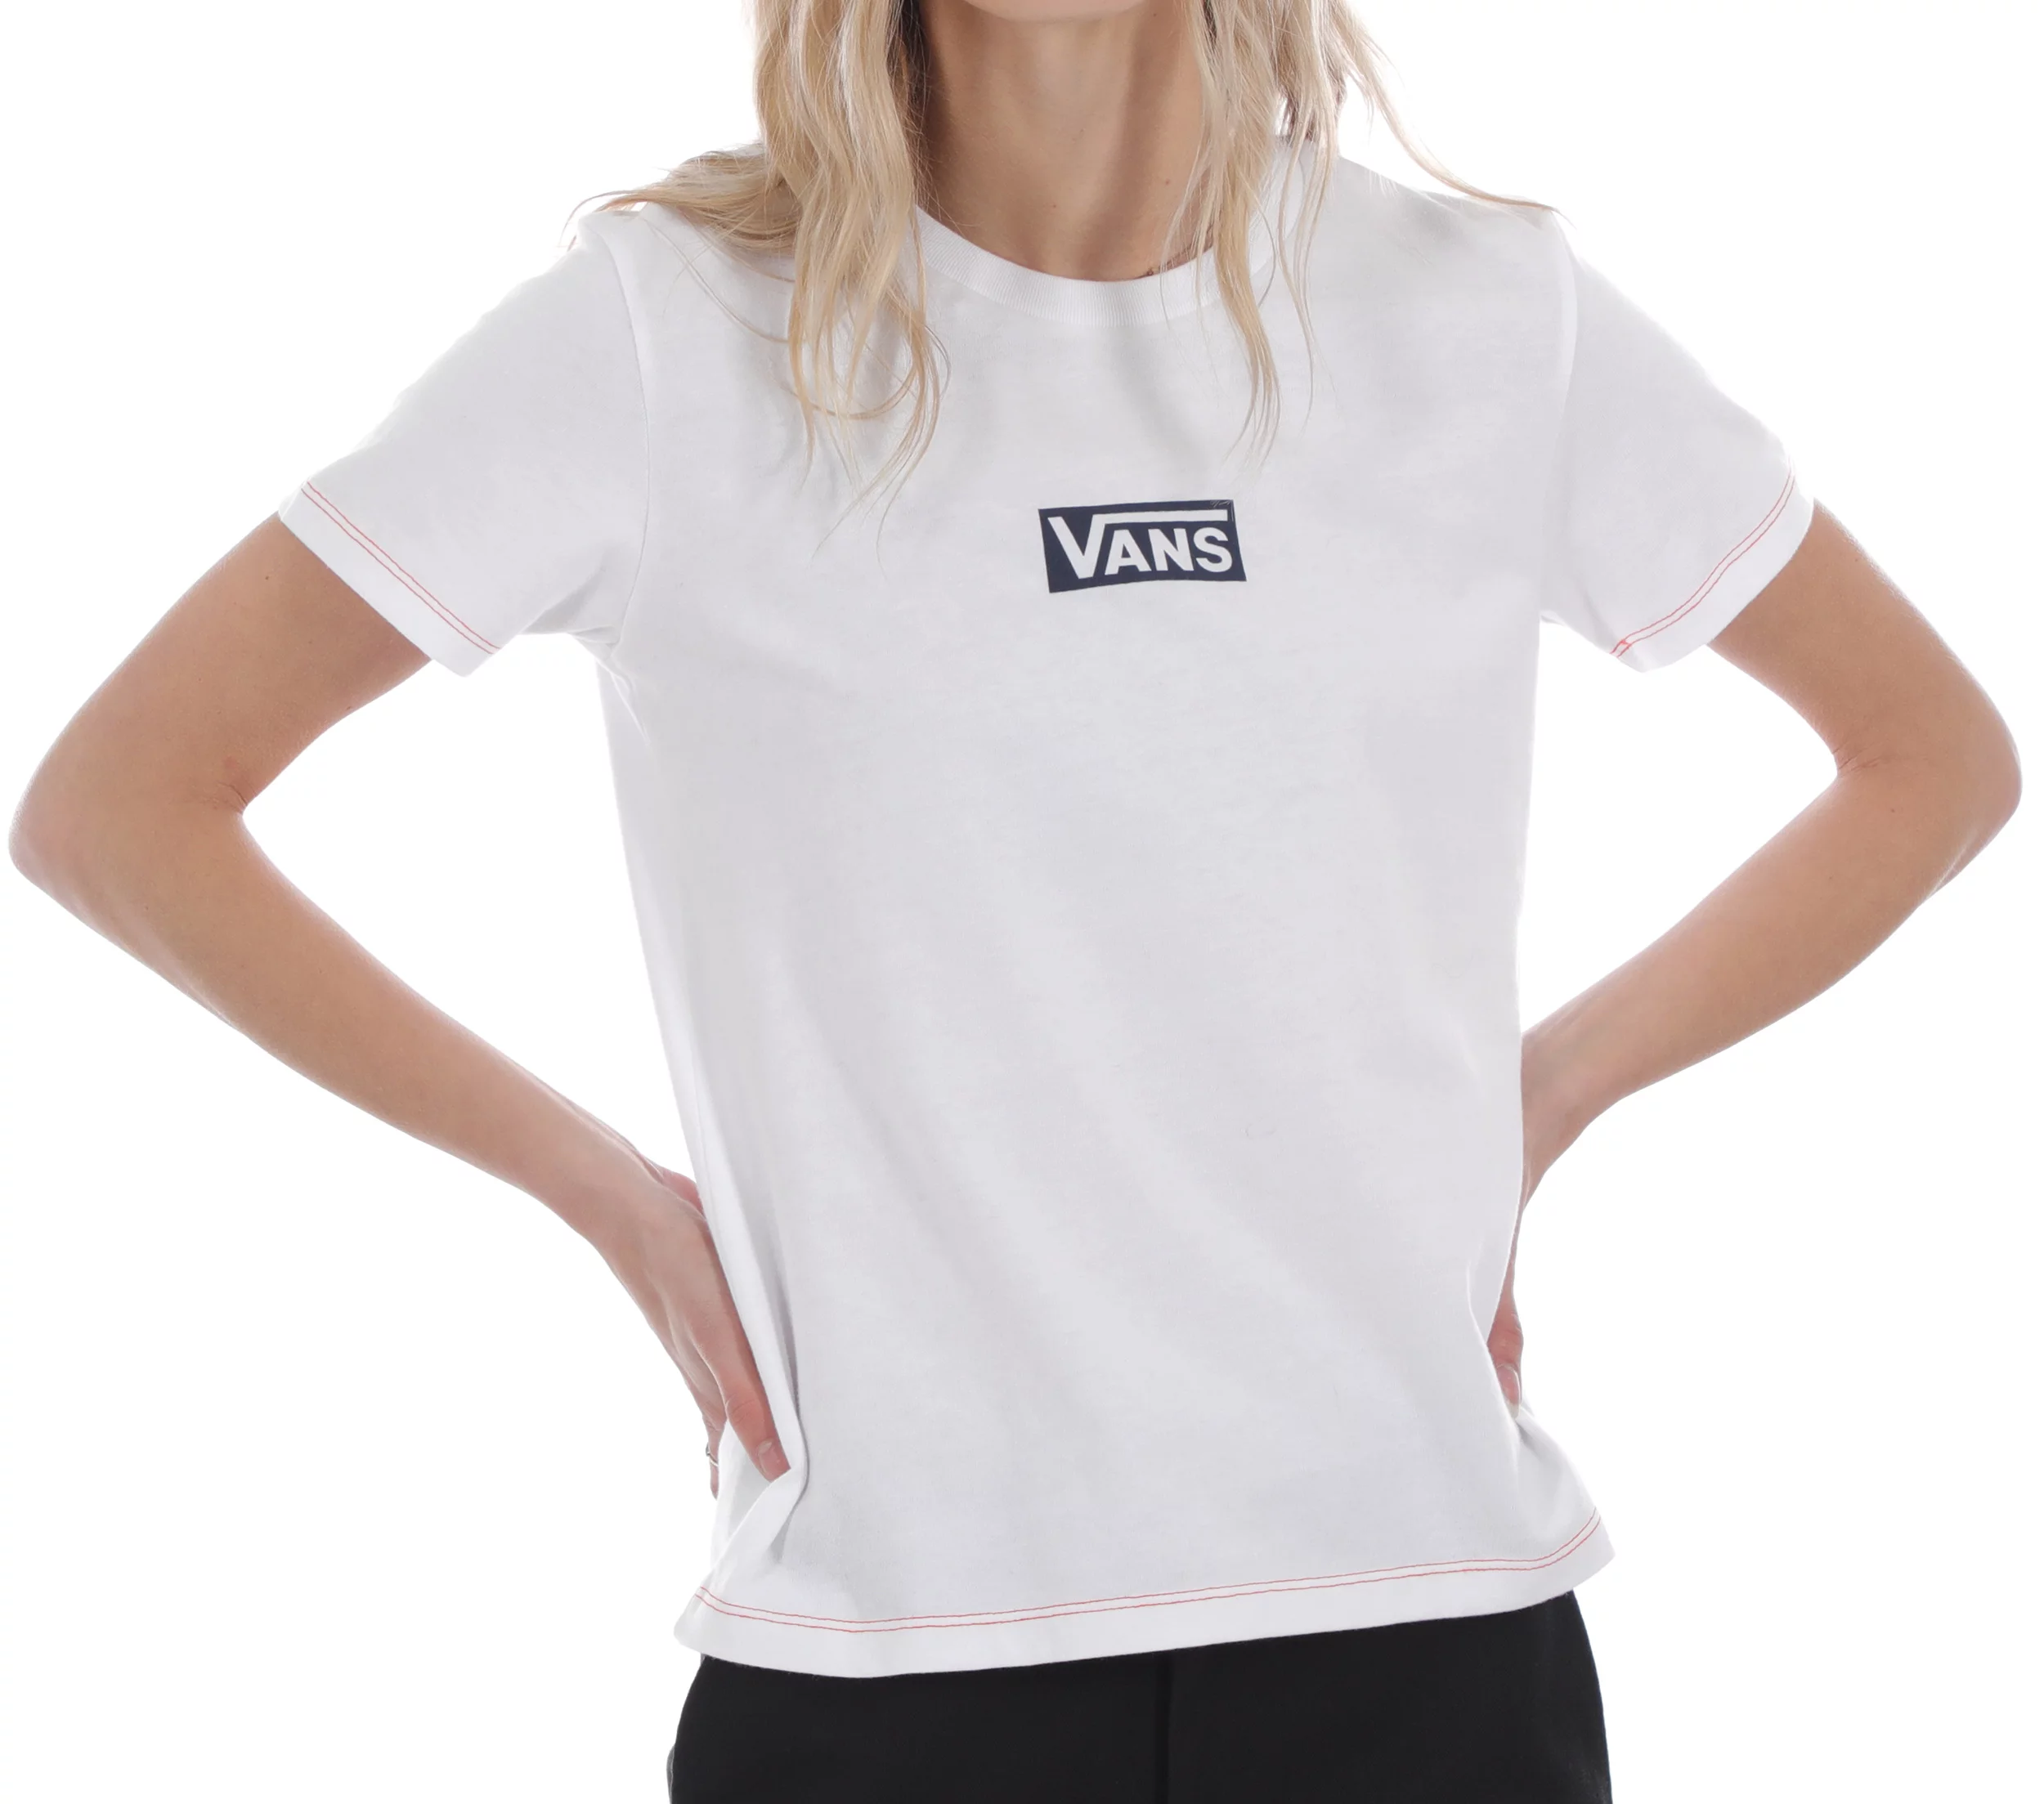 Vans Women's Pro Stitched T-Shirt - white Tactics